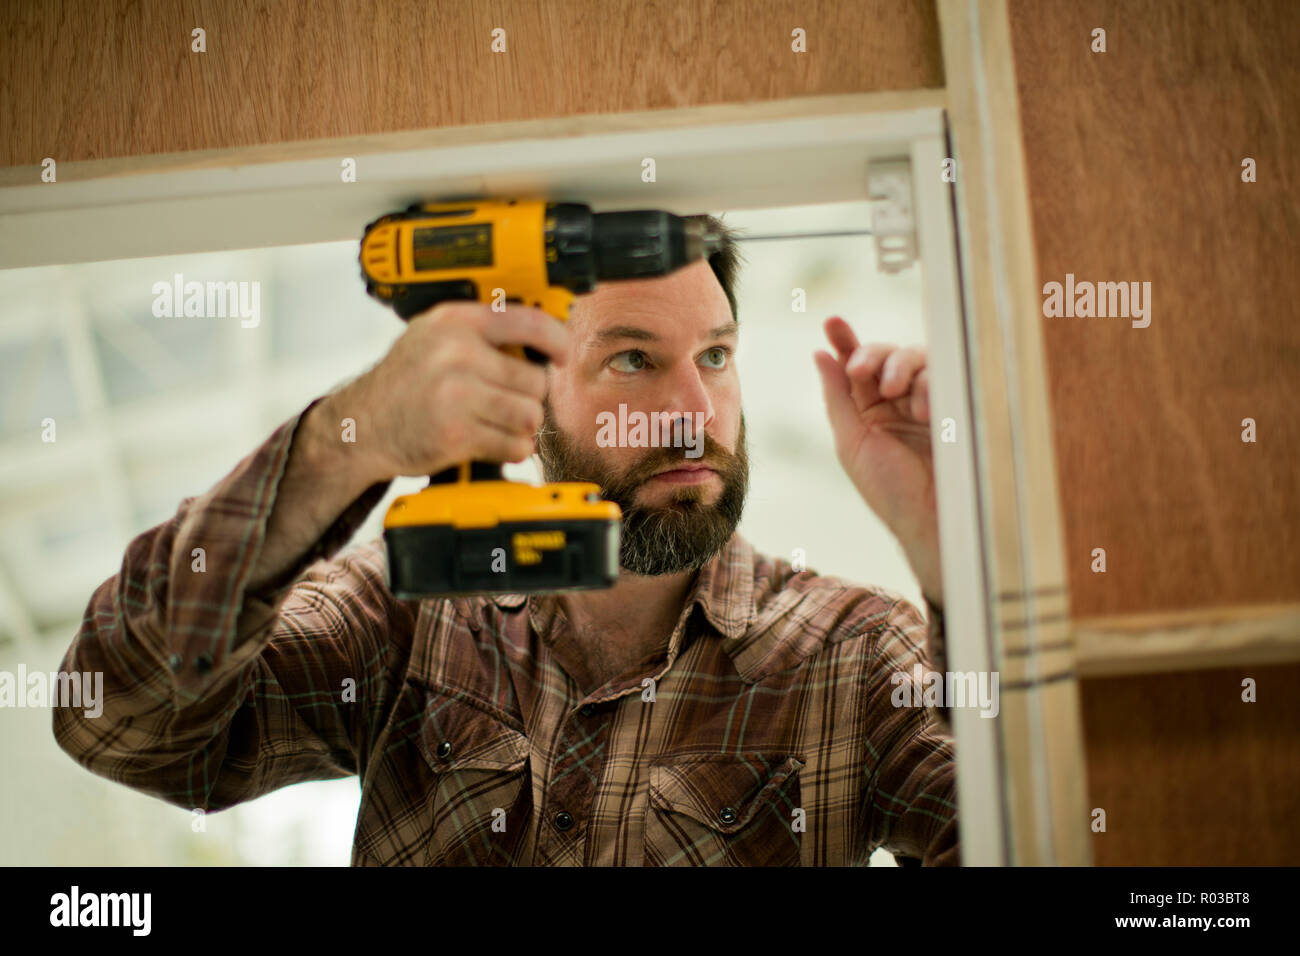 Mitte der erwachsene Mann konzentrieren, als er eine elektrische Bohrmaschine hält, während das Ausbessern der Türrahmen. Stockfoto